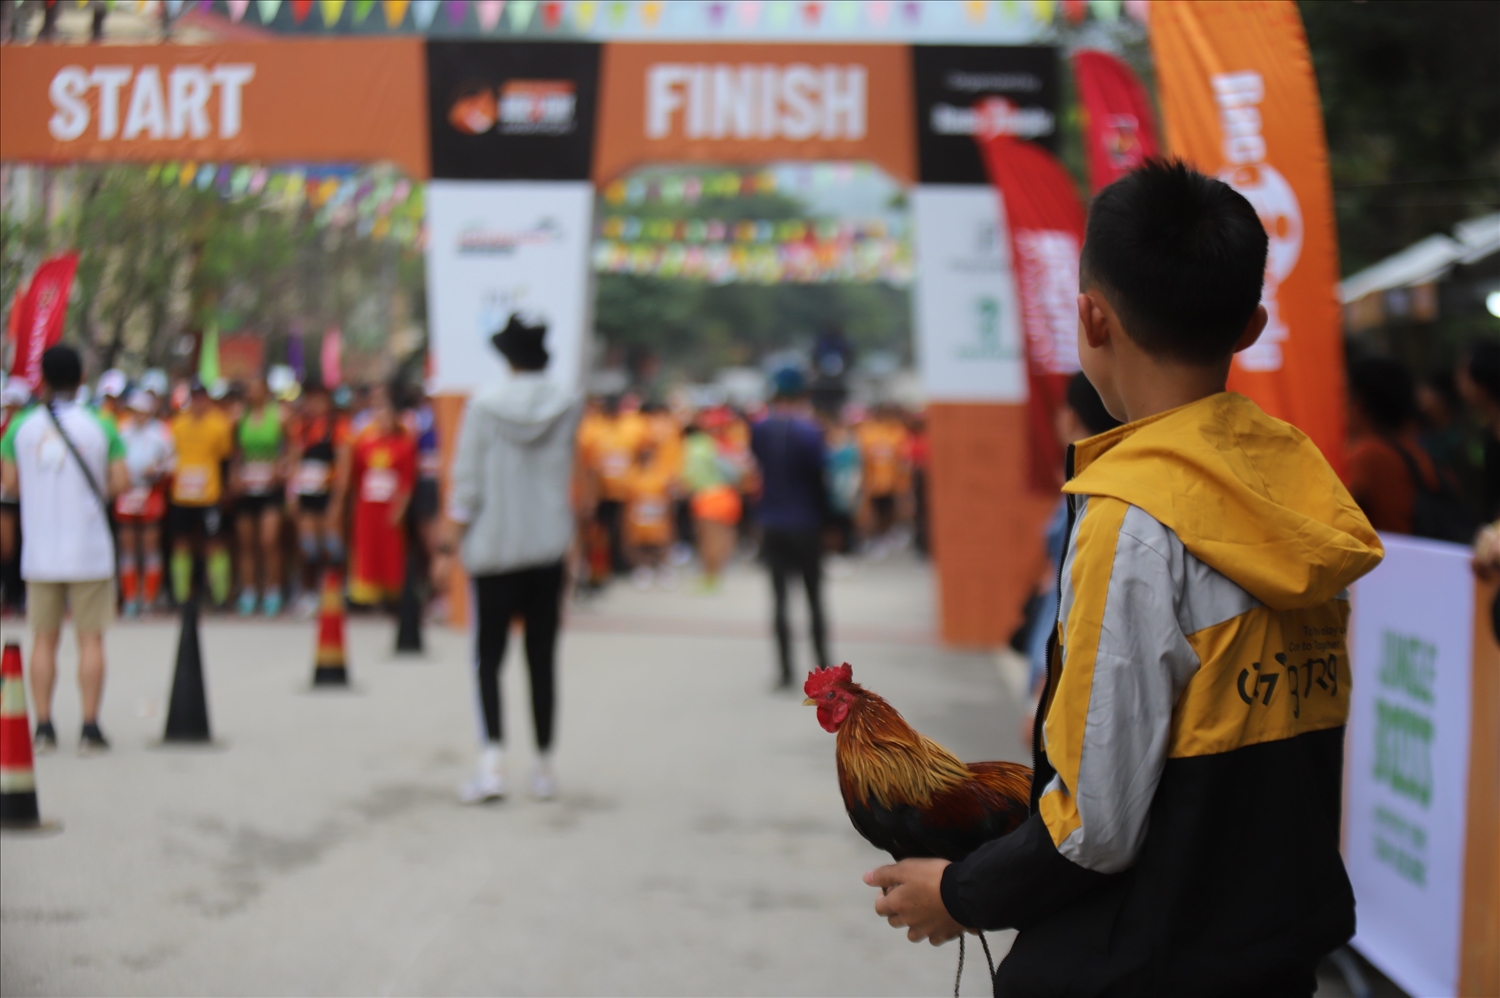 Giải Marathon quốc tế “Chạy trên cung đường Hạnh phúc” lần thứ IV, năm 2022 đã diễn ra đúng dịp chợ phiên nên thu hút đông đảo người dân theo dõi